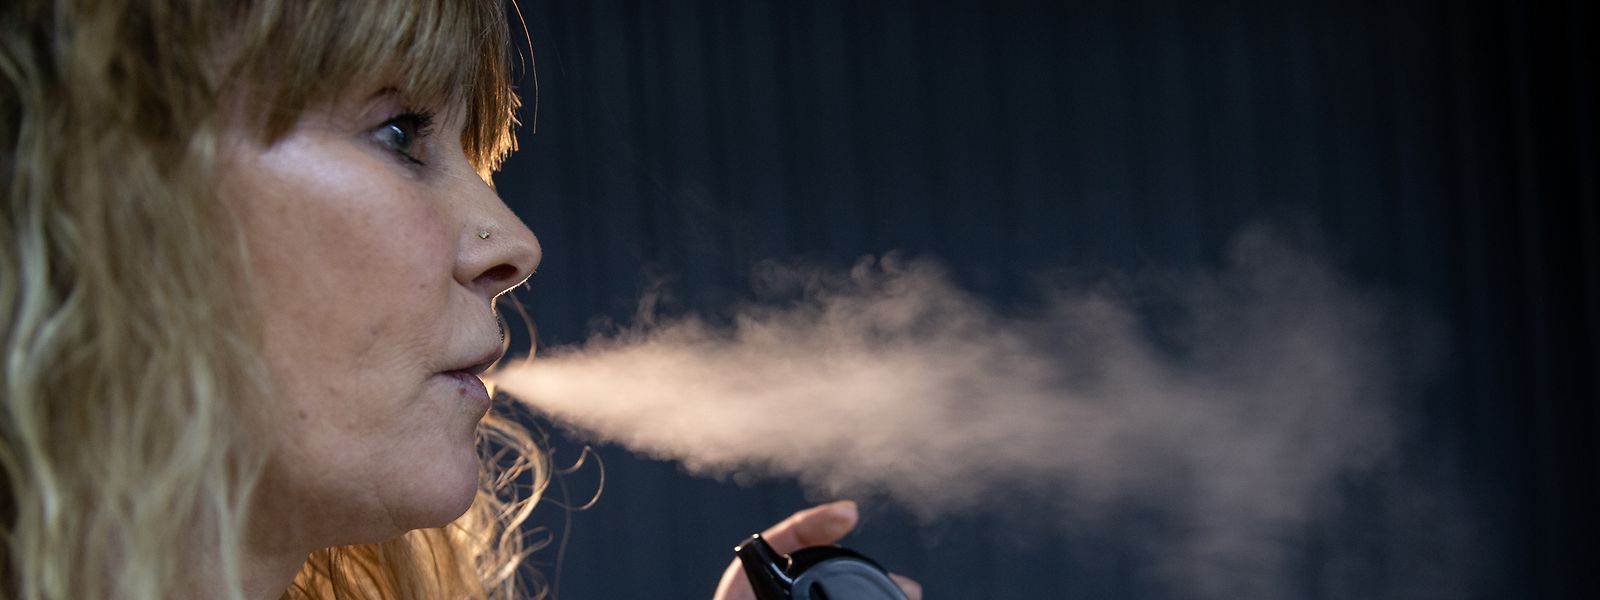 Certains additifs d'e-cigarettes peuvent s'avérer mortels, à en croire les statistiques américaines.